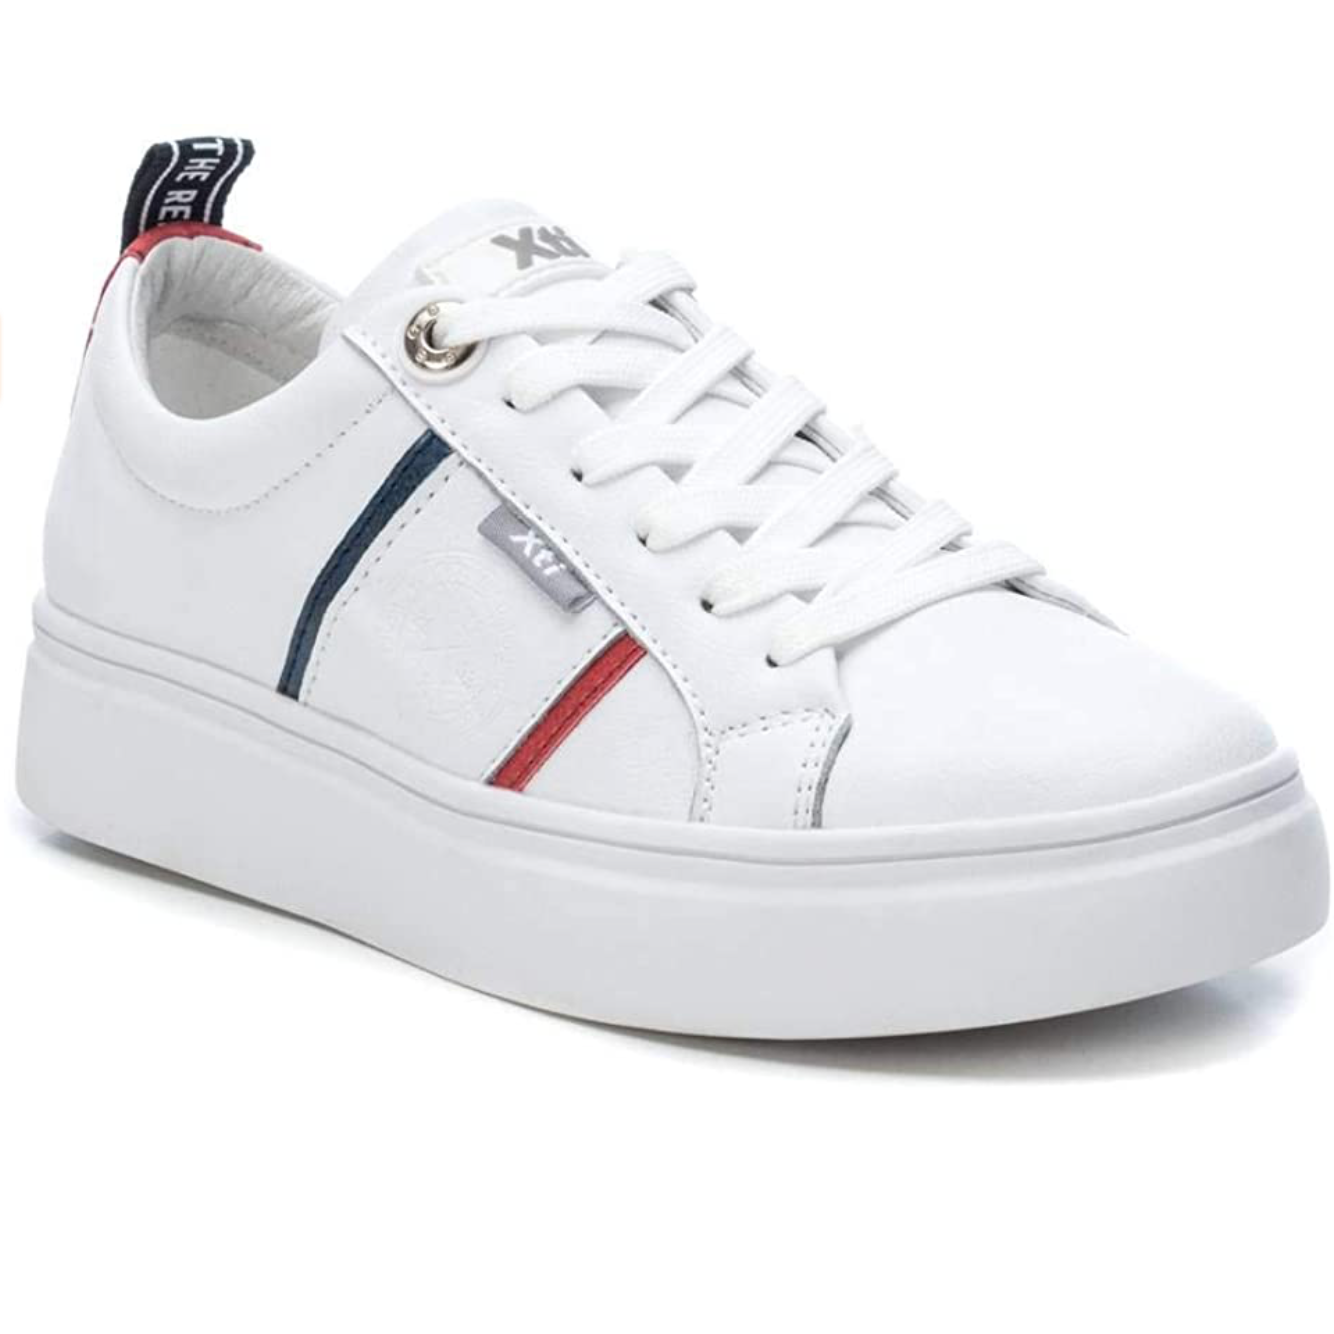 XTI - 44067 - Low Top Sneaker - White